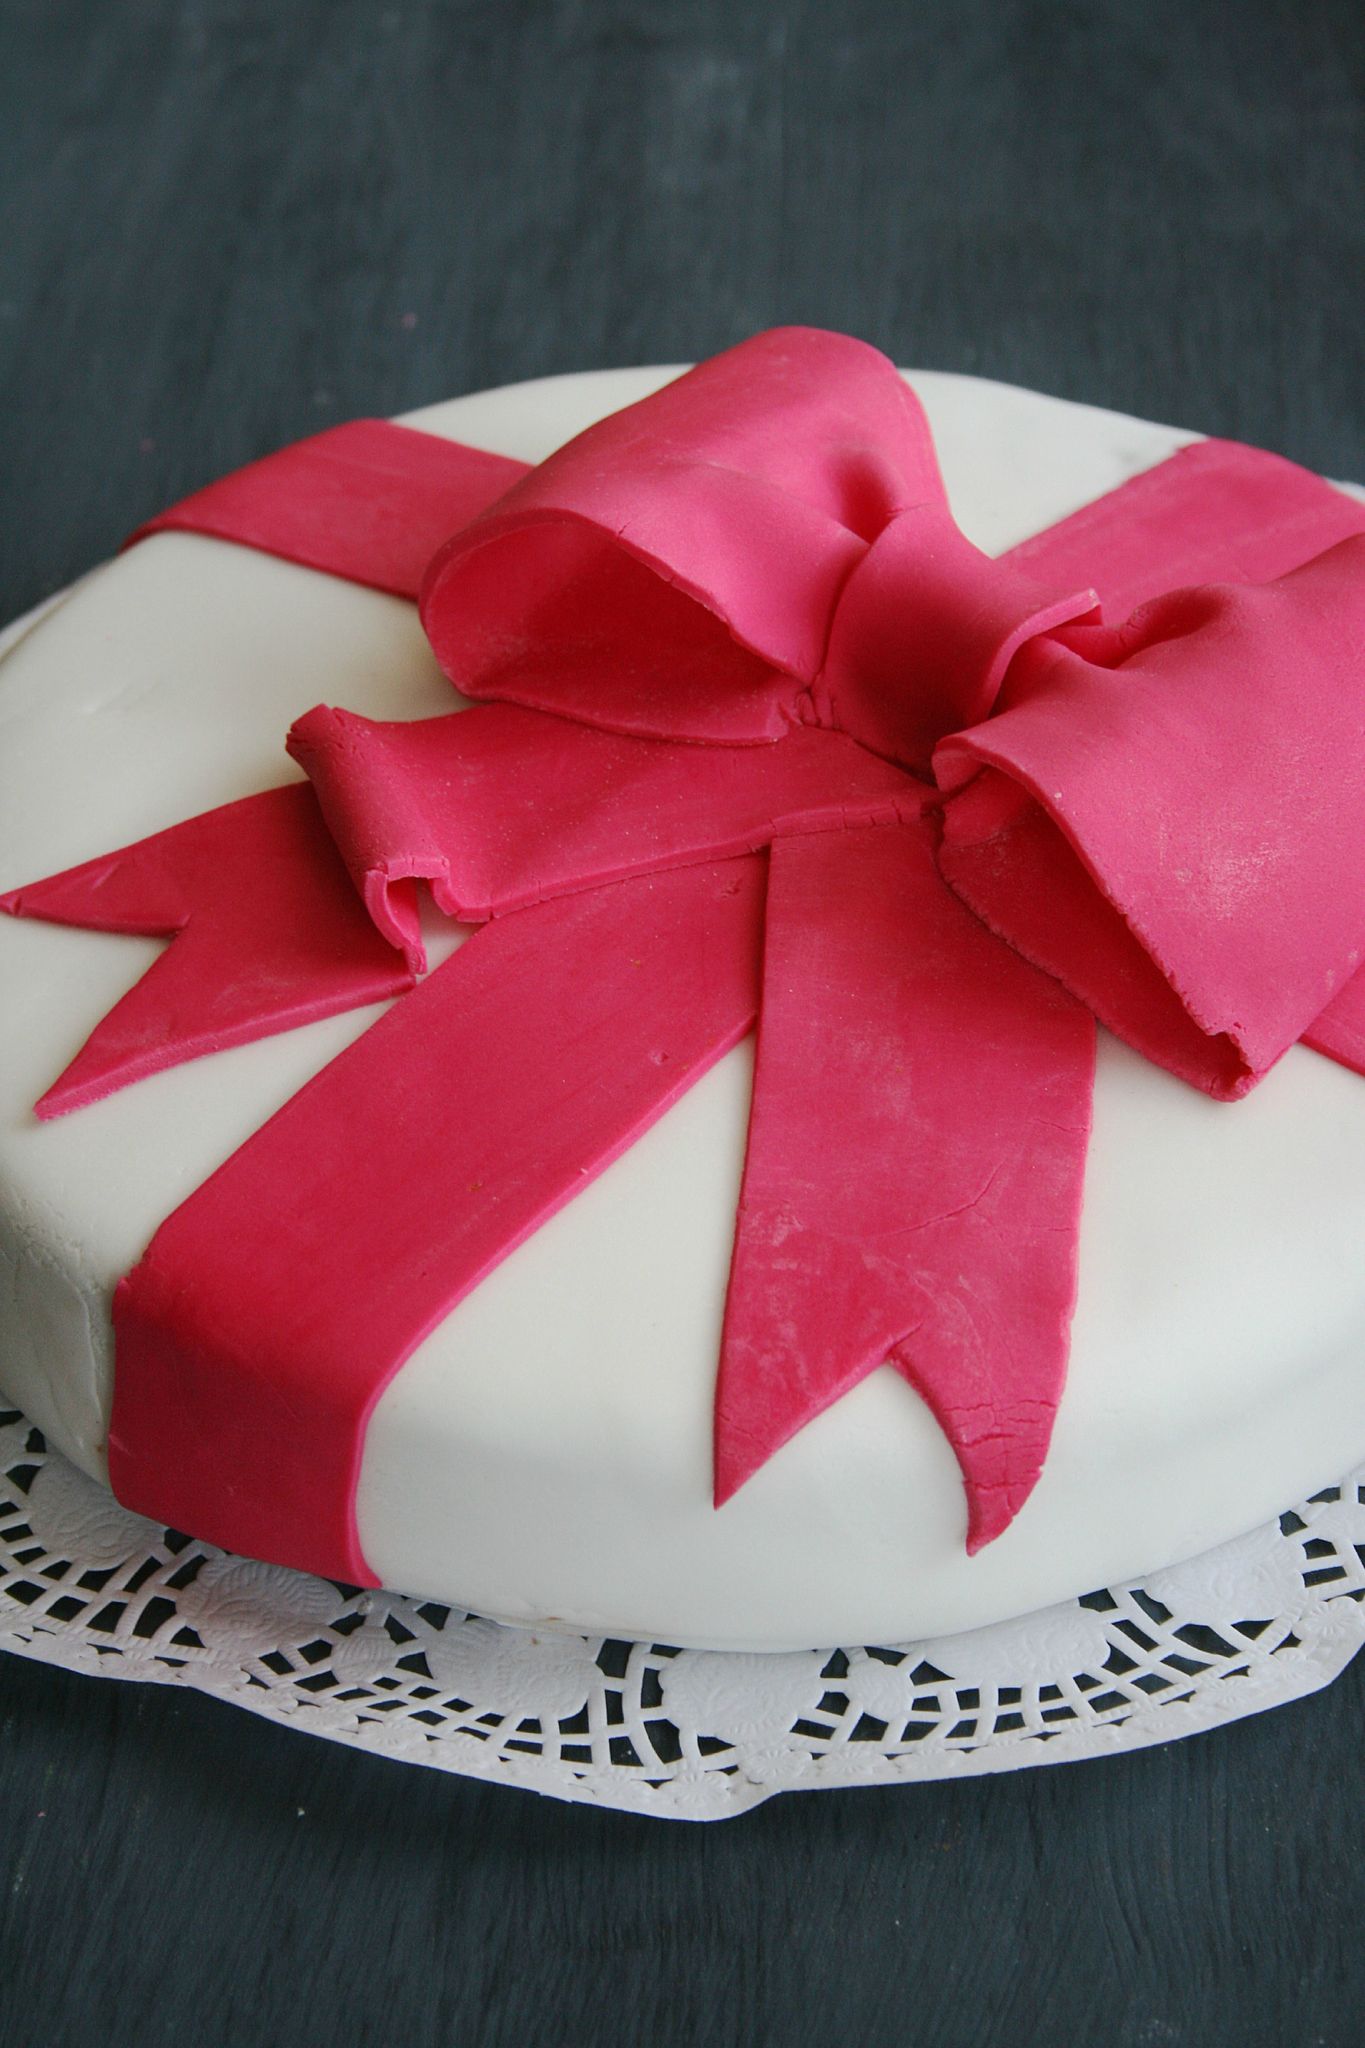 décoration gateau anniversaire pate a sucre - Décorer un gâteau d'anniversaire en pâte à sucre ? 750 